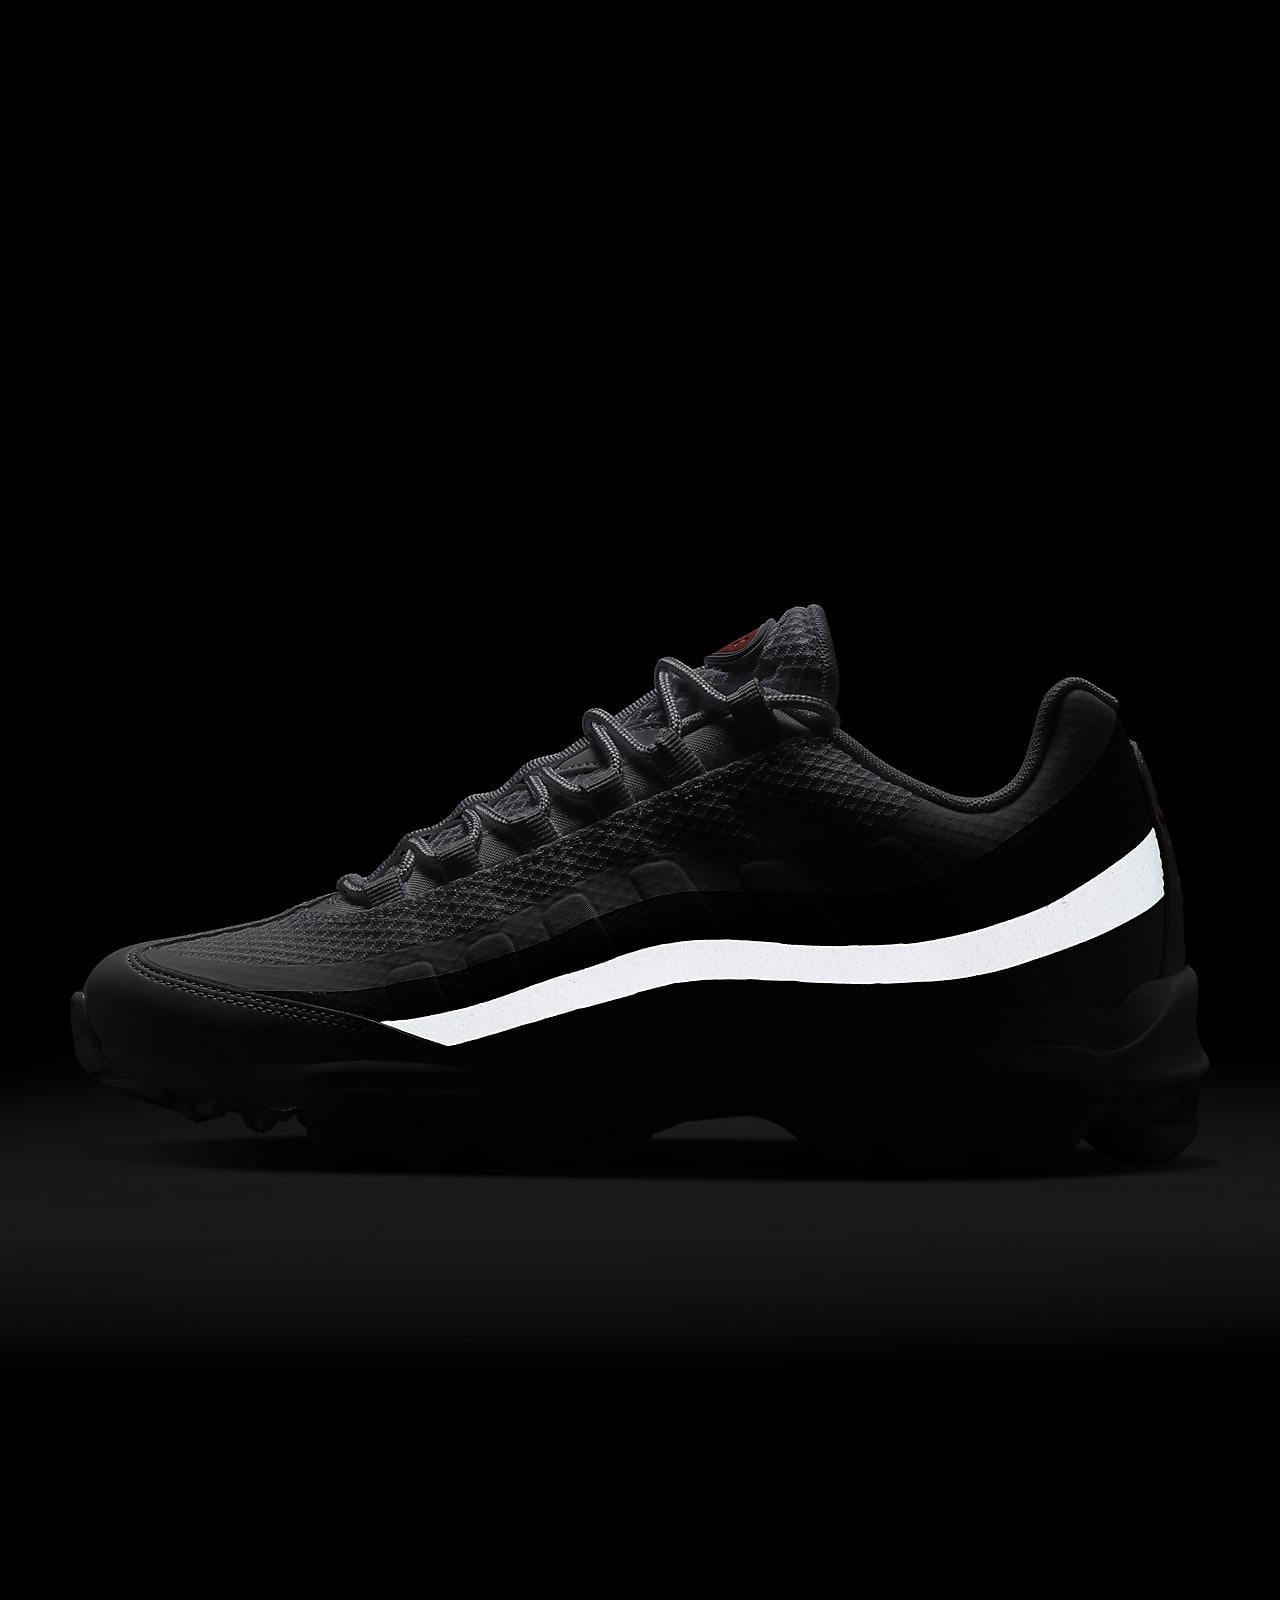 geboorte Veranderlijk Spookachtig Nike Air Max 95 Ultra Men's Shoes. Nike LU